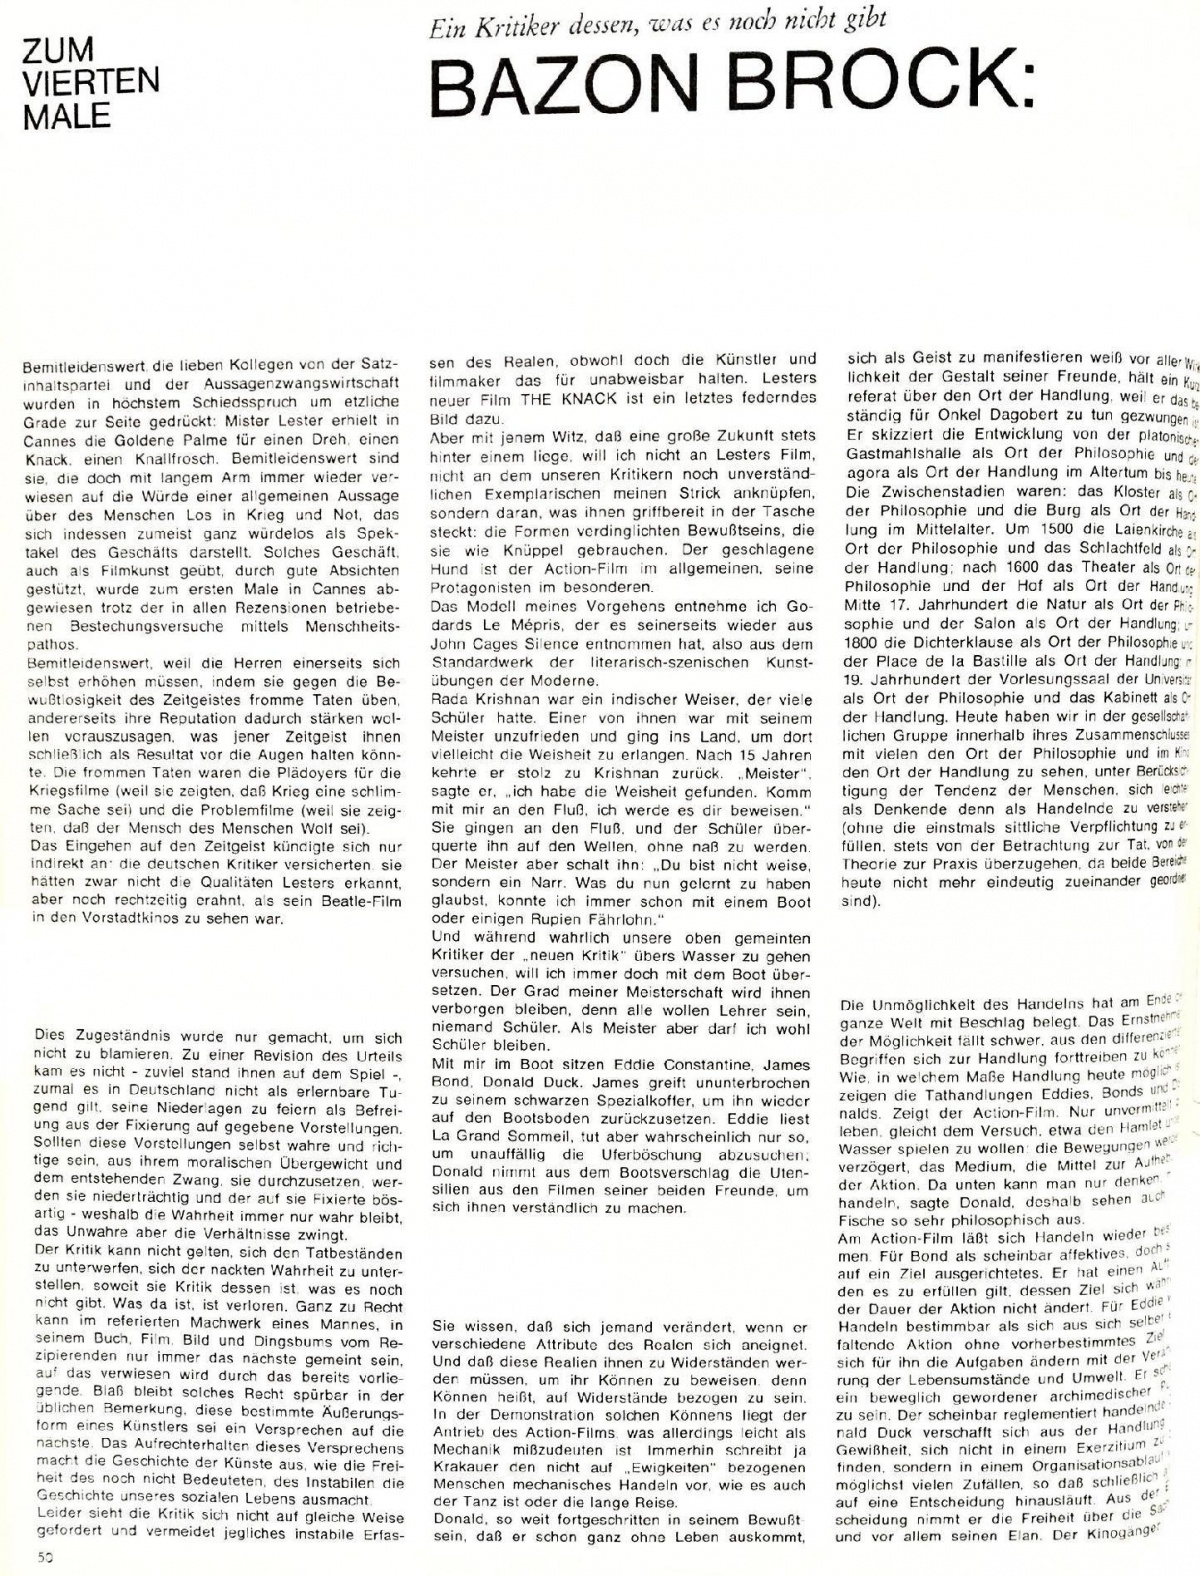 Film Zeitschrift 7/65 Text S.50